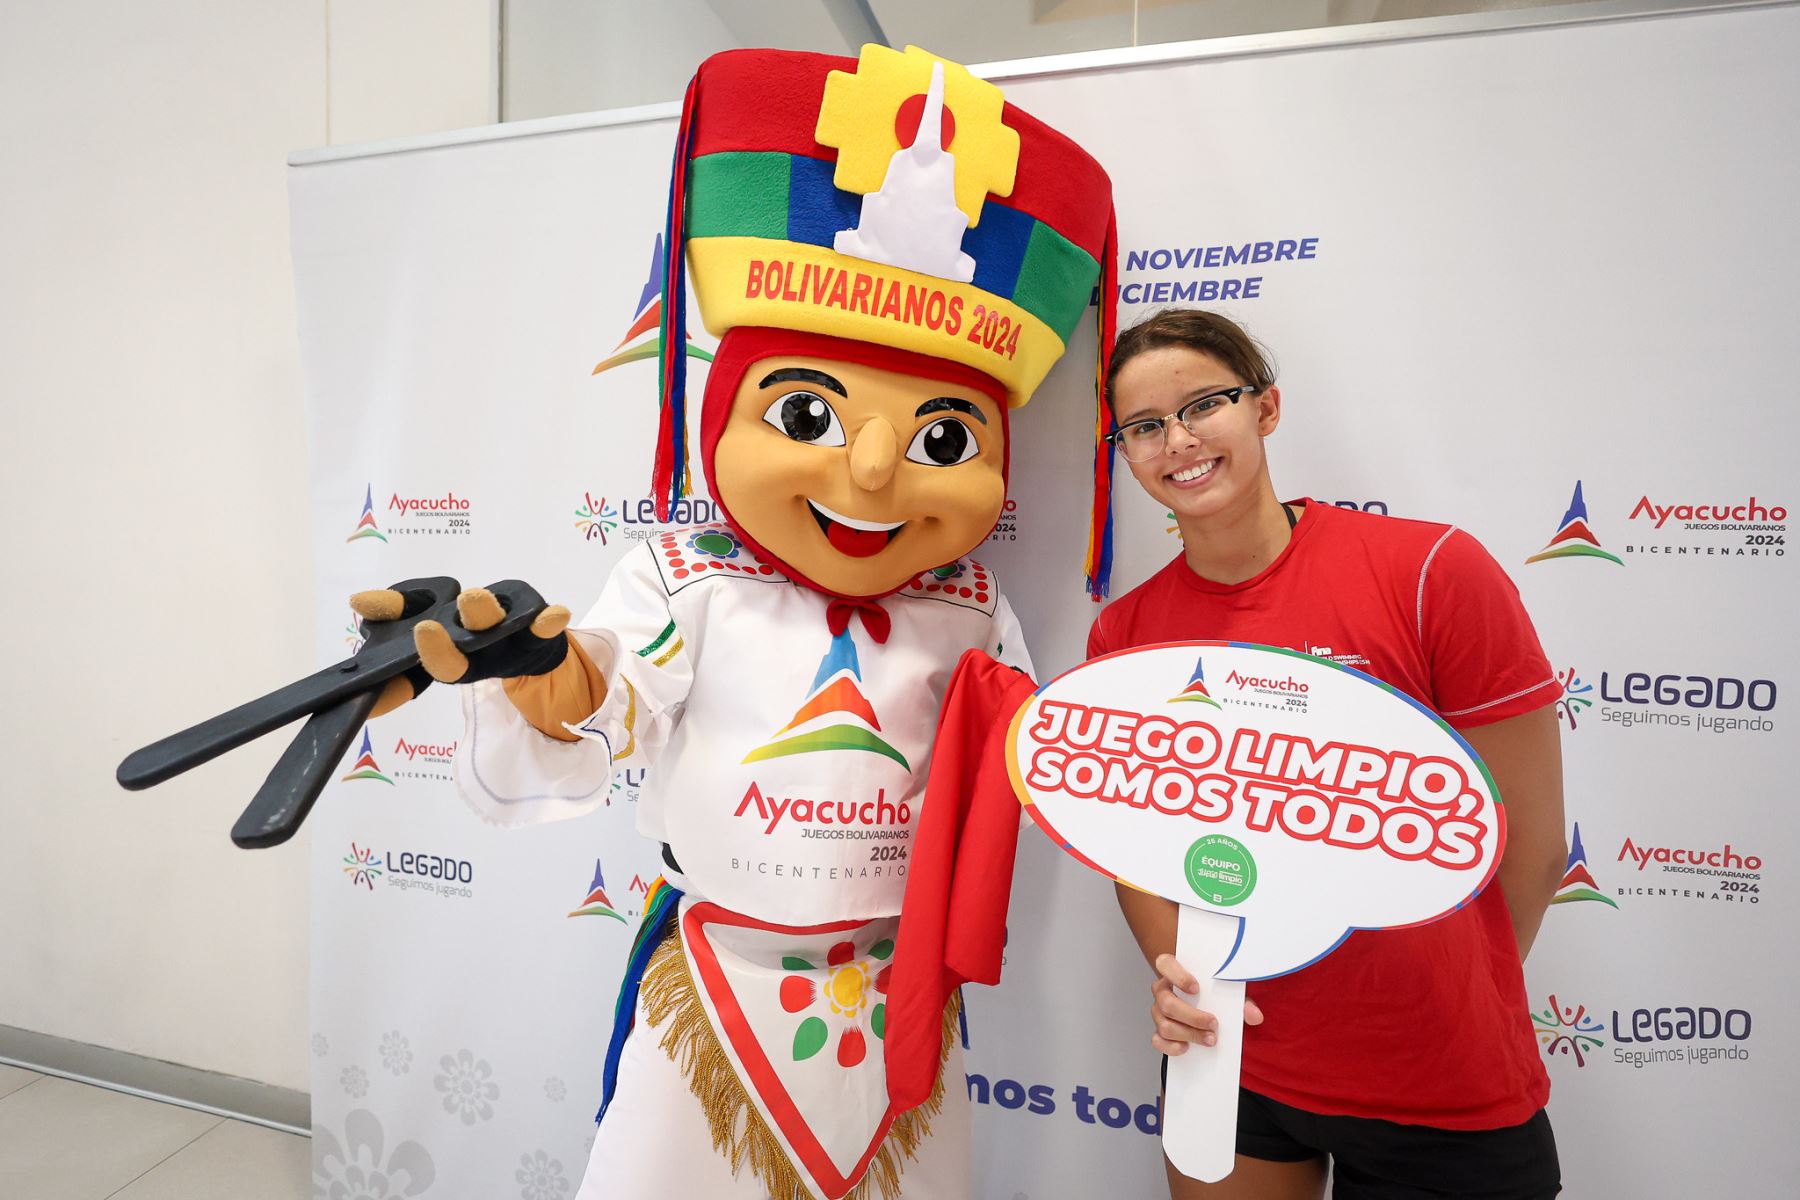 La nadadora peruana Alexia Sotomayor apoya el juego limpio en el deporte